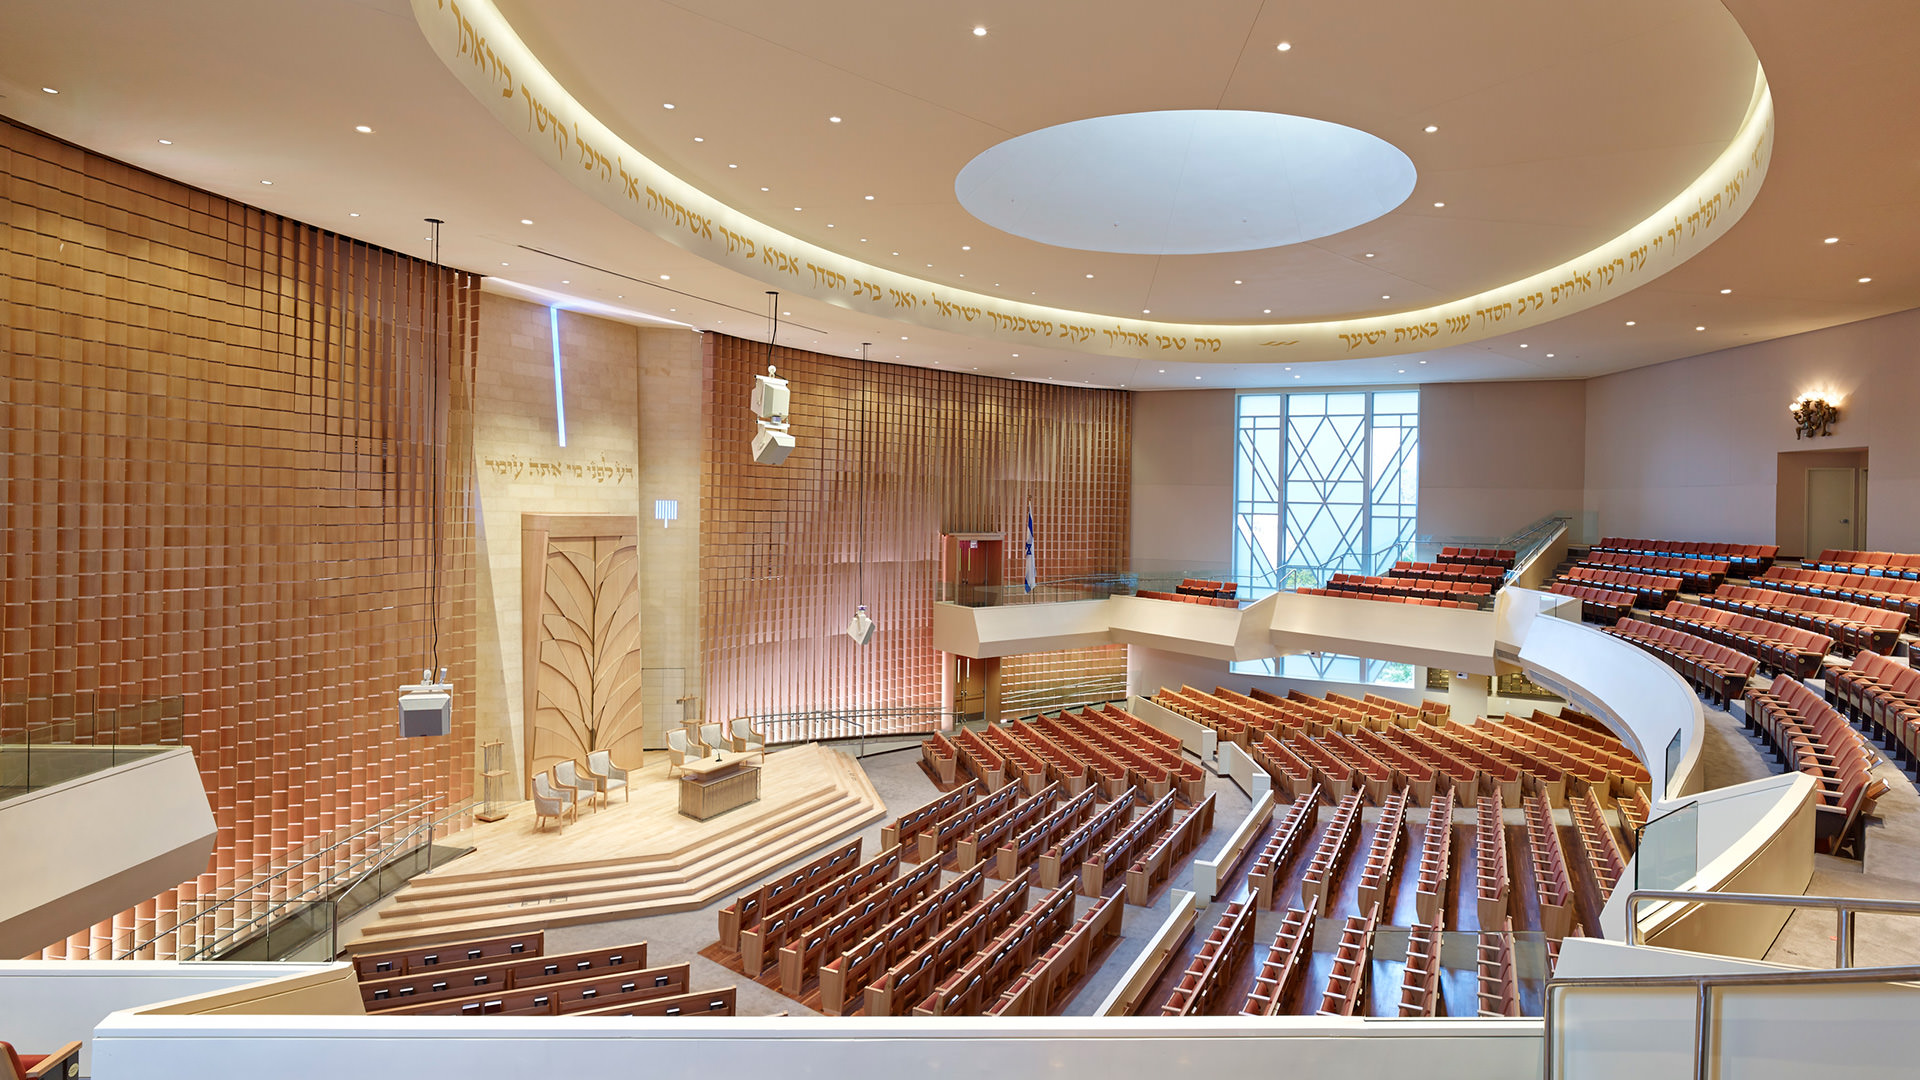 Adas Israel Synagogue